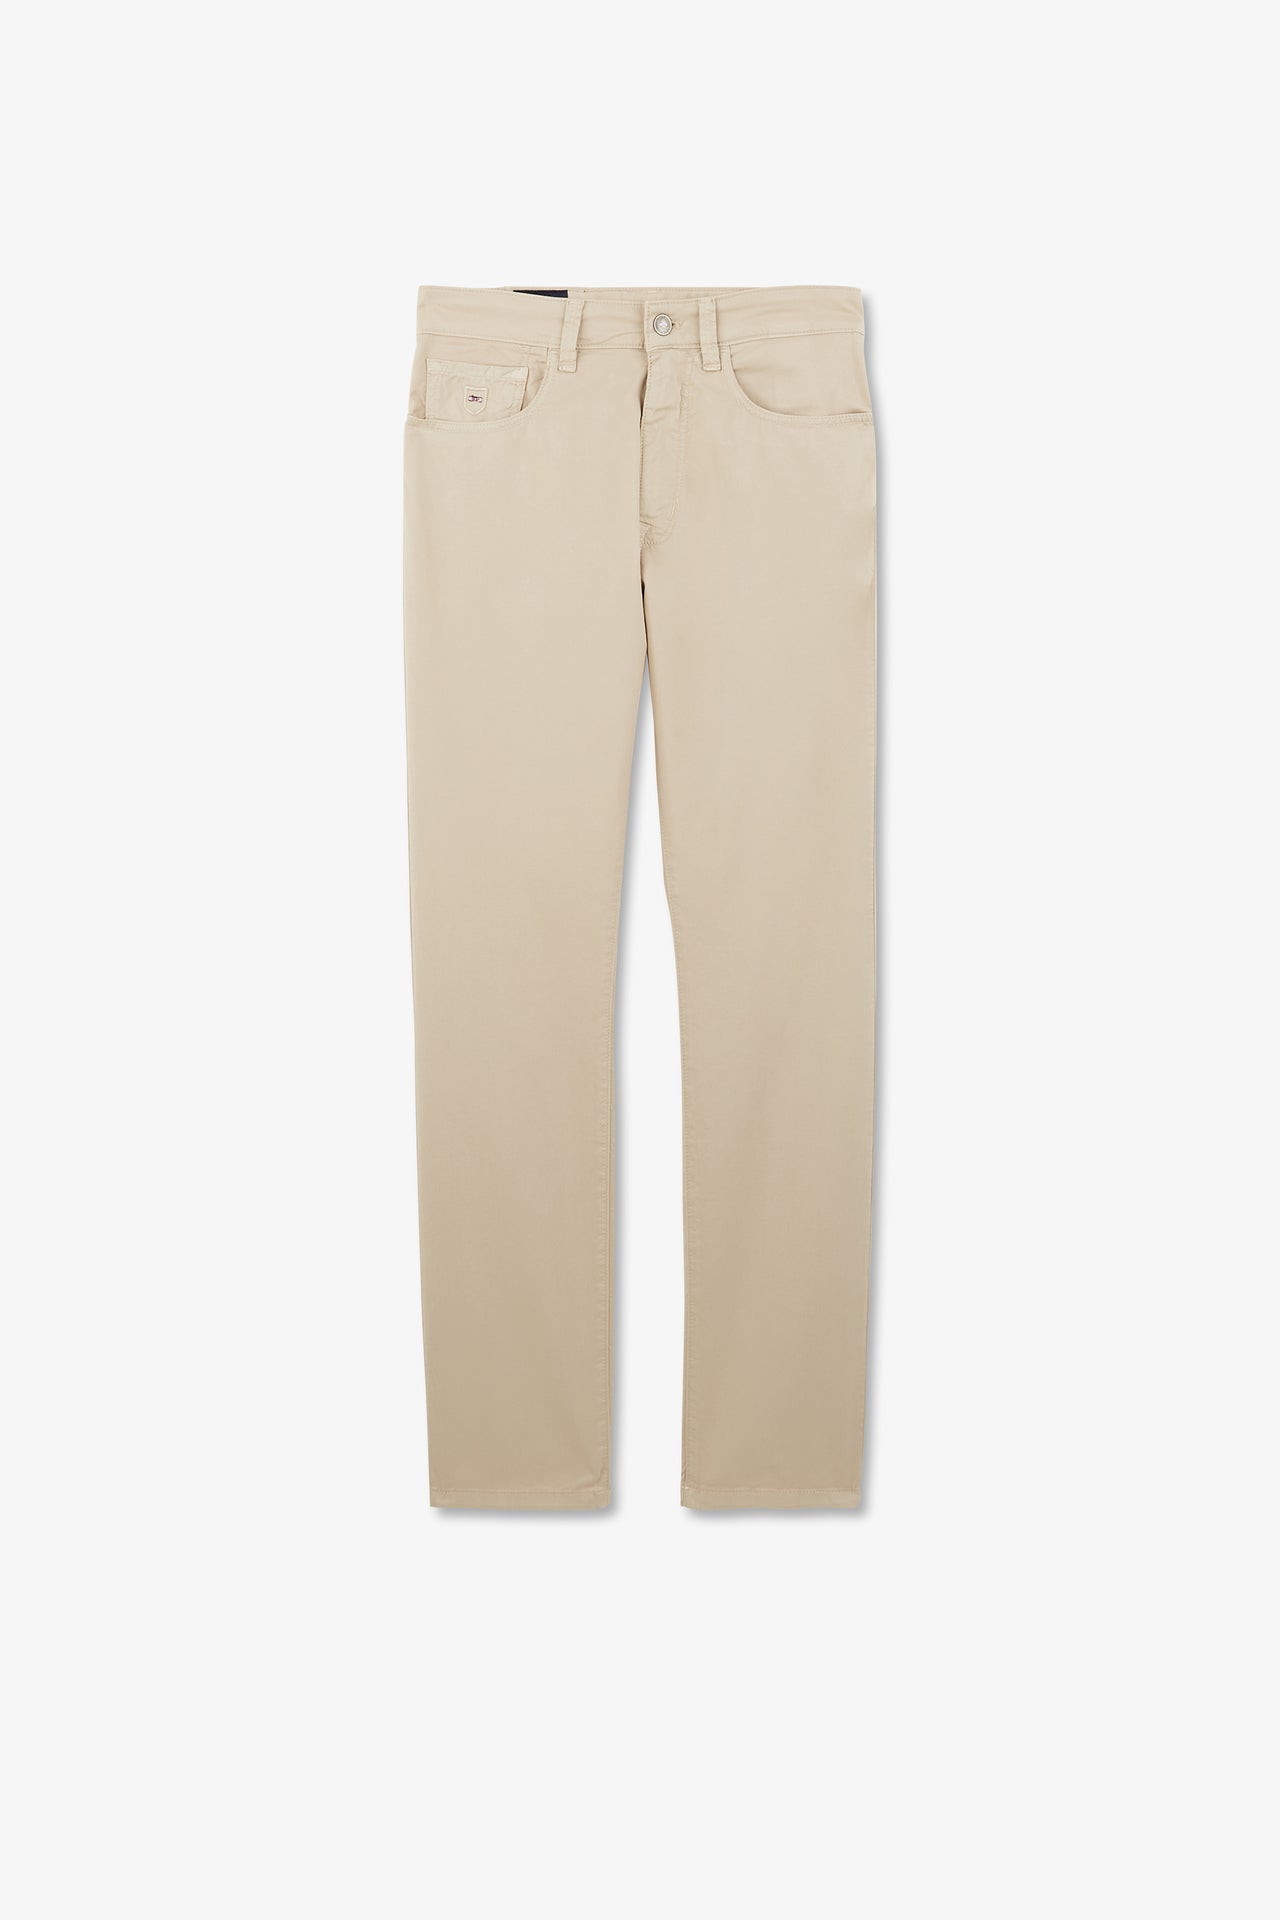 Pantalon beige droit 5 poches - Image 2